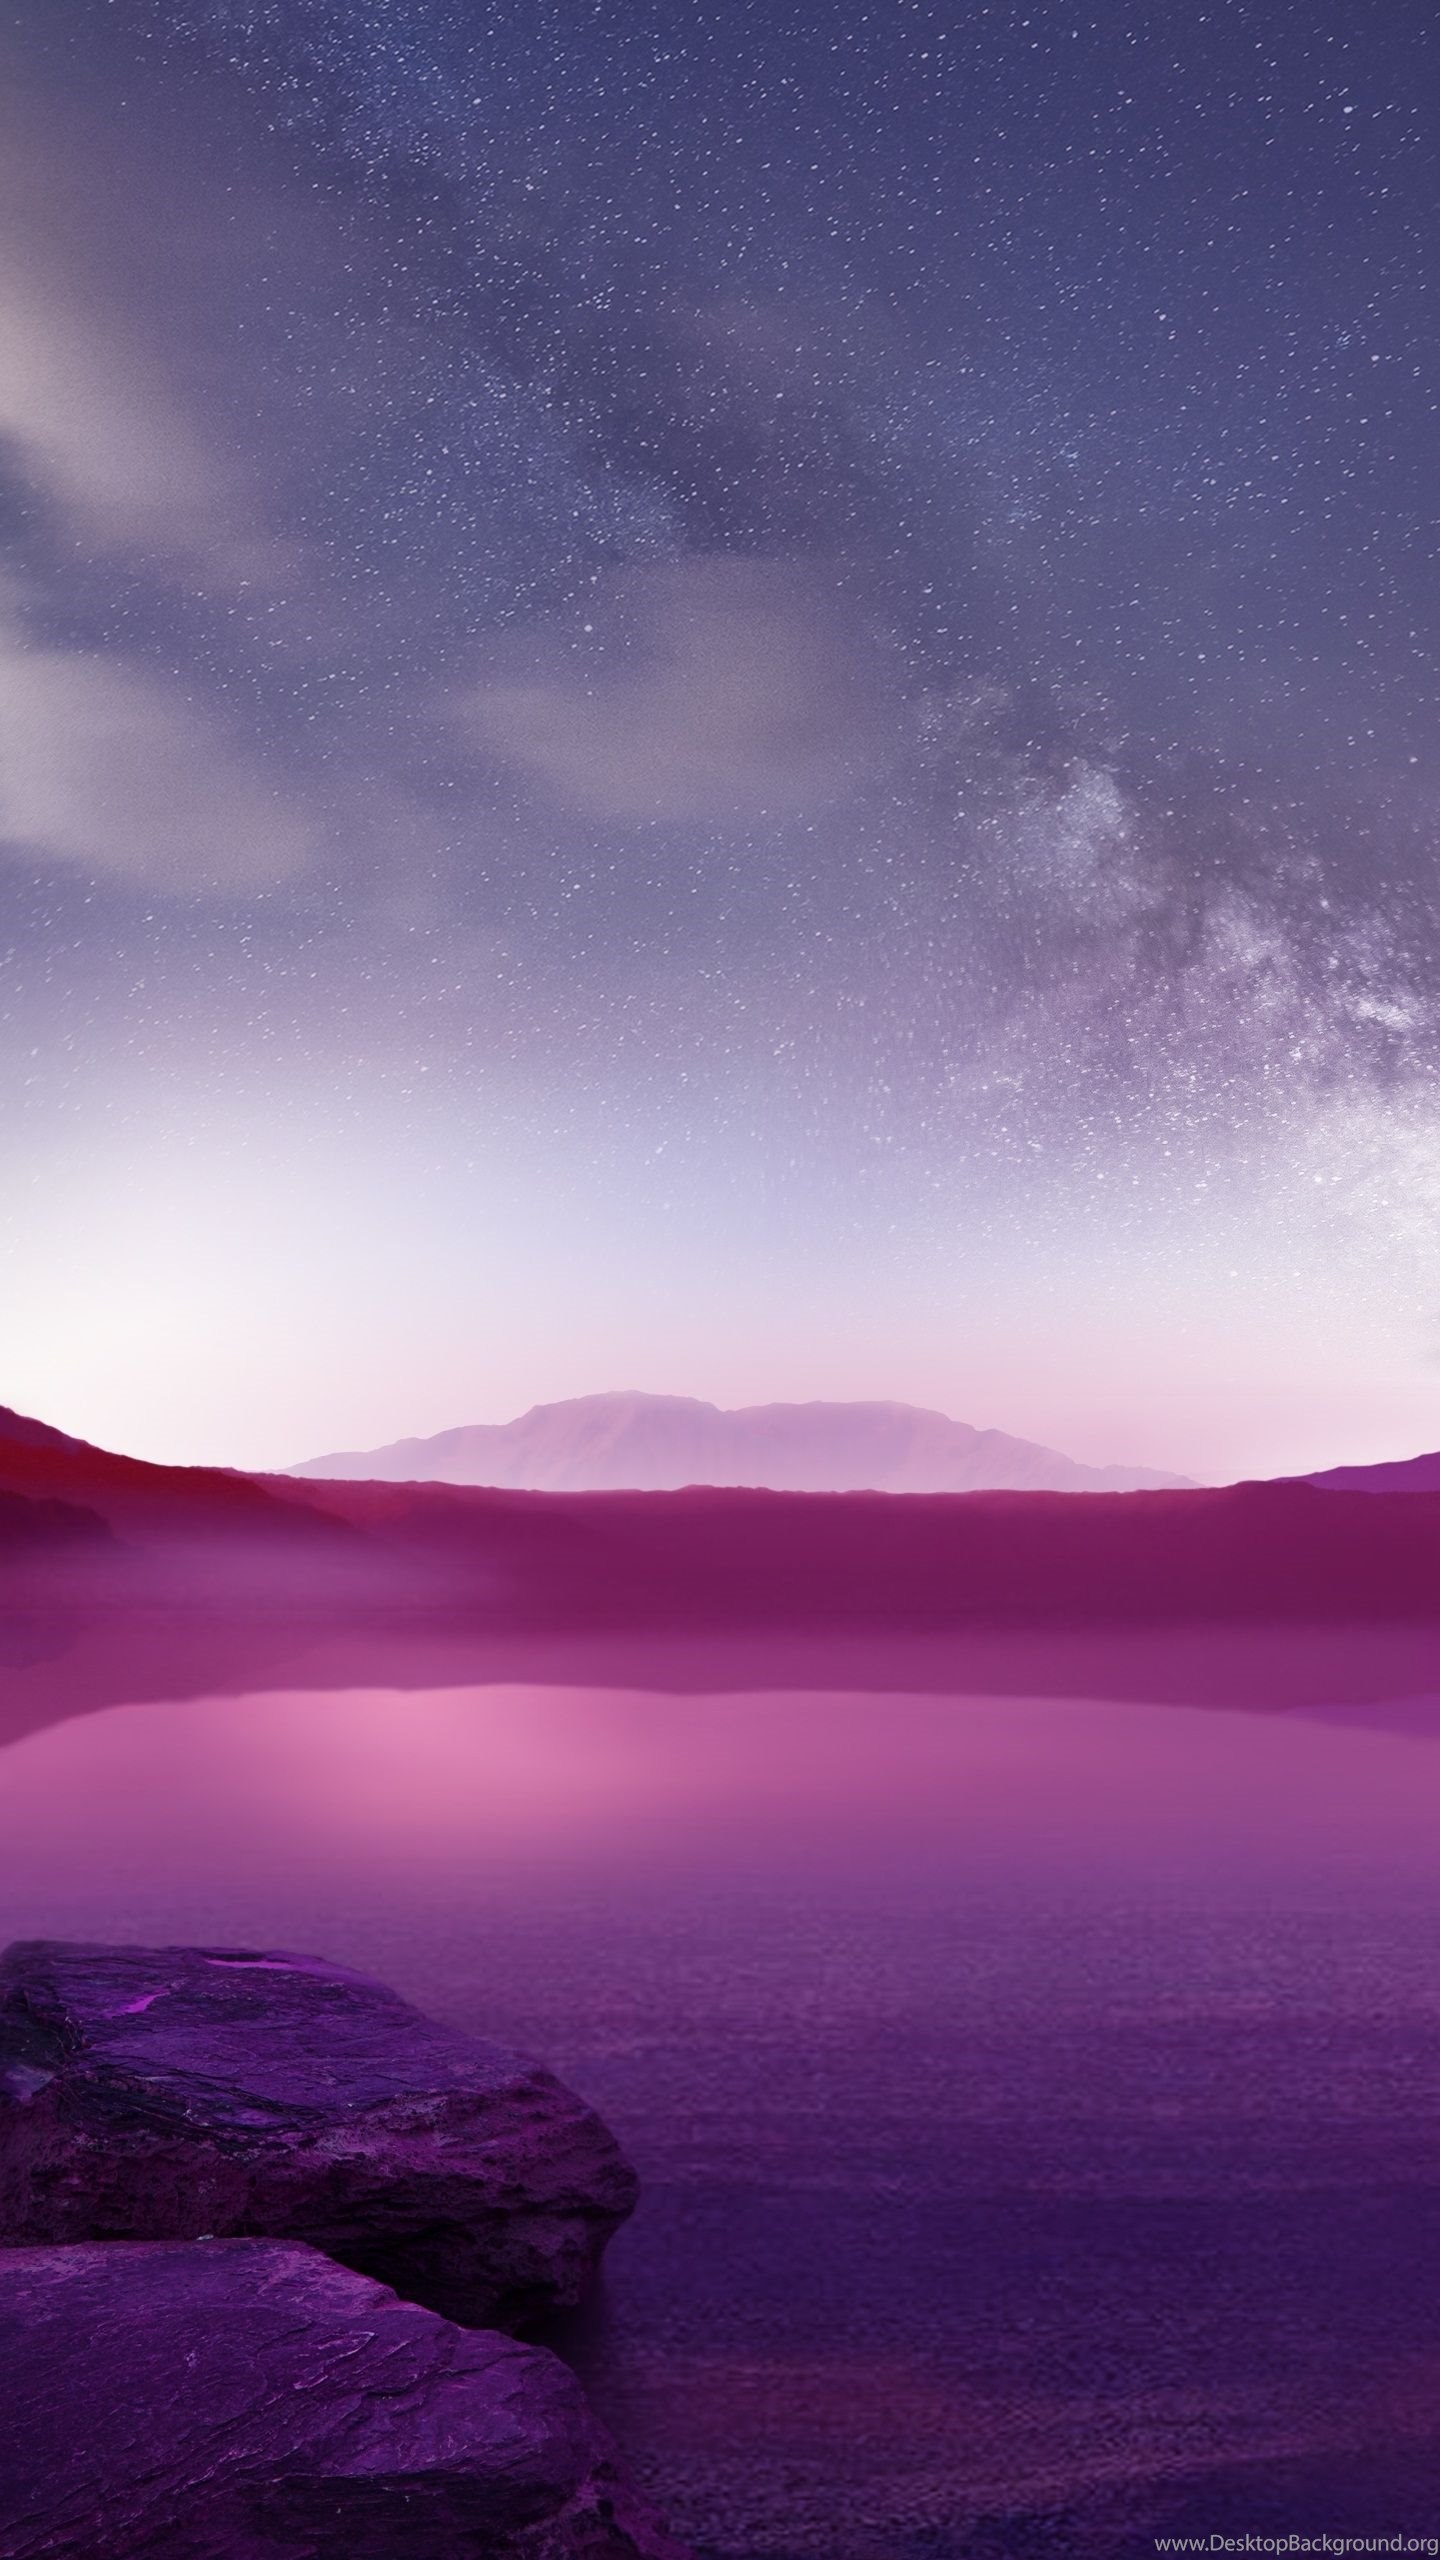 Фото обои экрана блокировки. Фиолетовые горы. Заставка на экран блокировки. Красивые заставки на экран блокировки. Пейзаж.